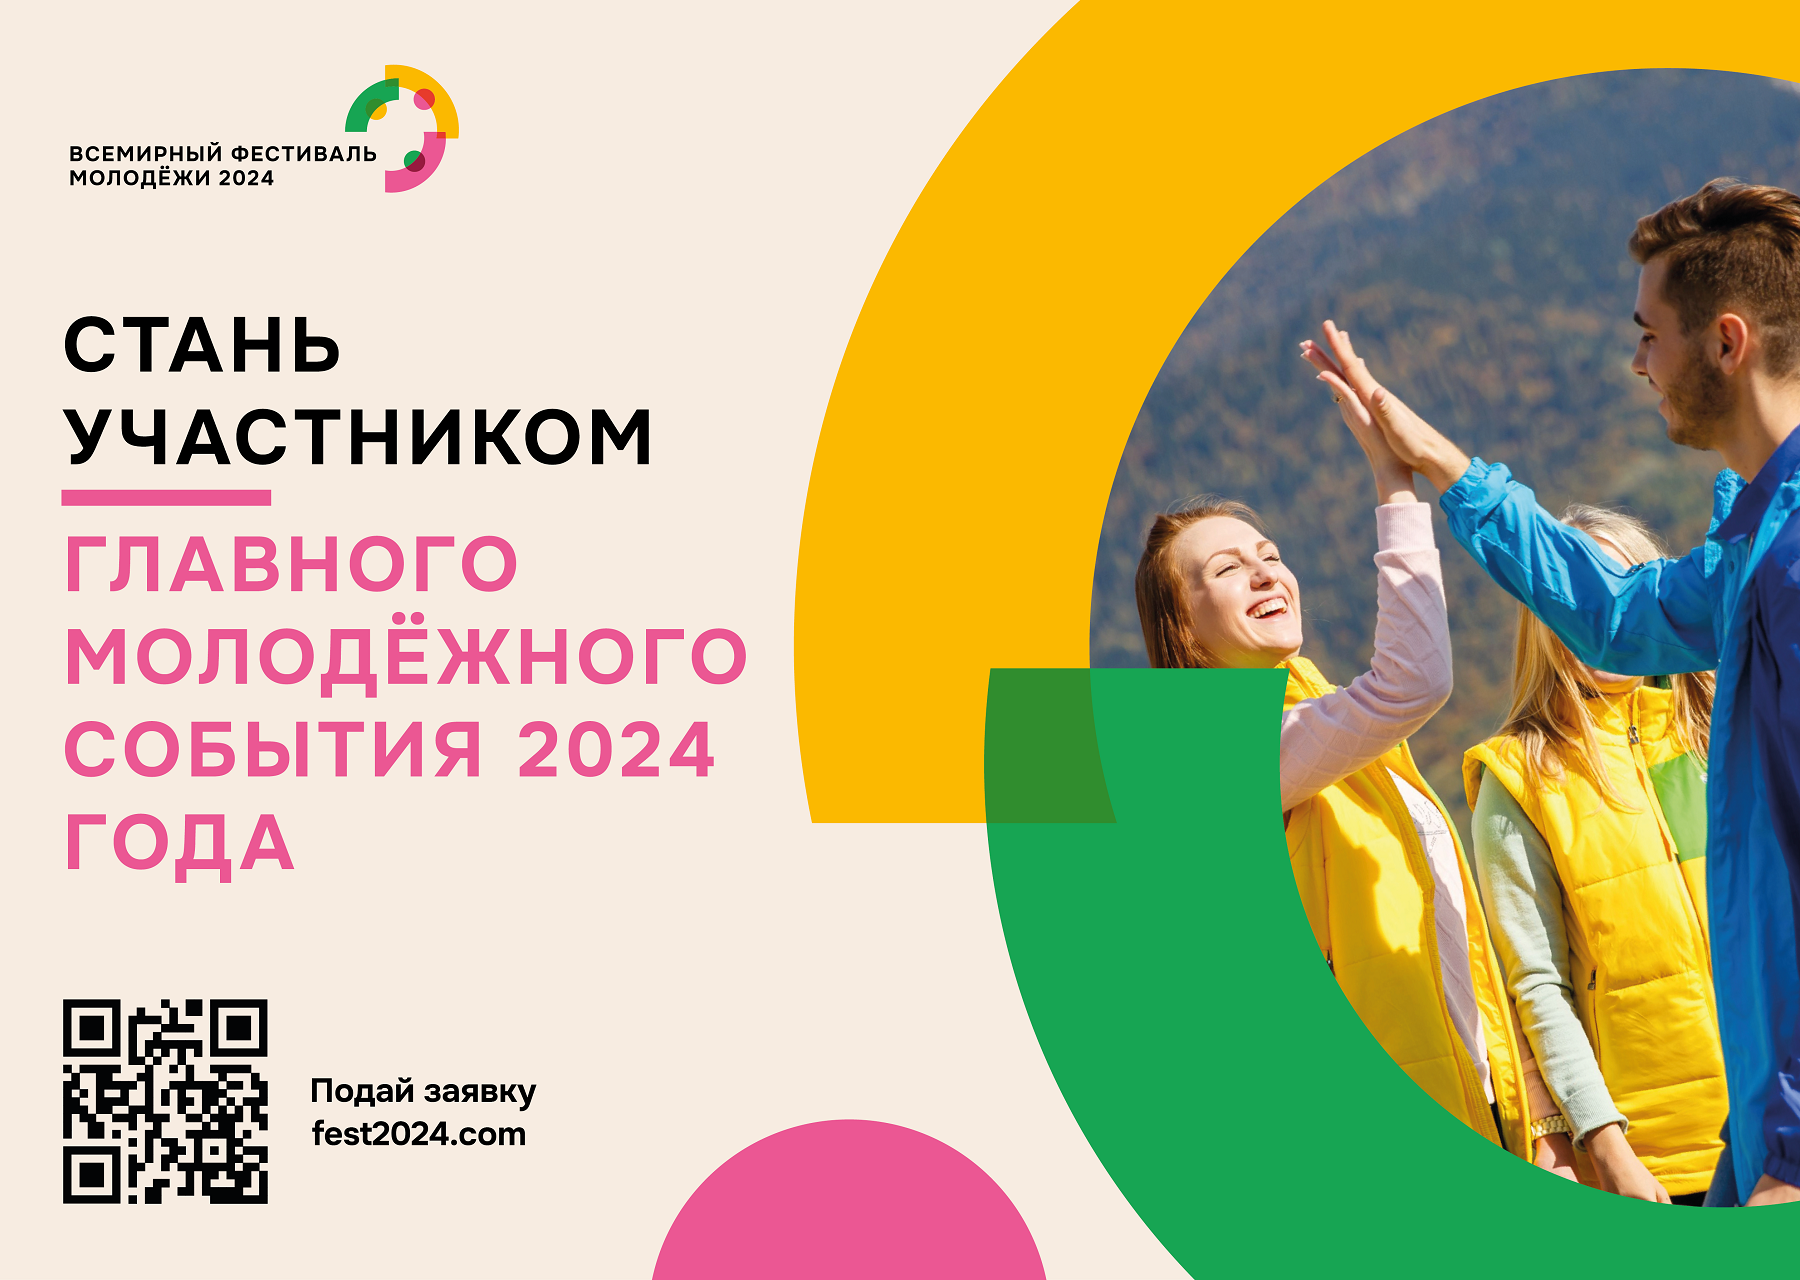 Когда всемирный фестиваль молодежи в 2024 году. Всемирный фестиваль молодёжи 2024 в России. Всемирный молодежный фестиваль 2024 в Сочи. Всемирный фестиваль молодёжи в Сочи в 2024 году. Молодежный фестиваль Сириус 2024.